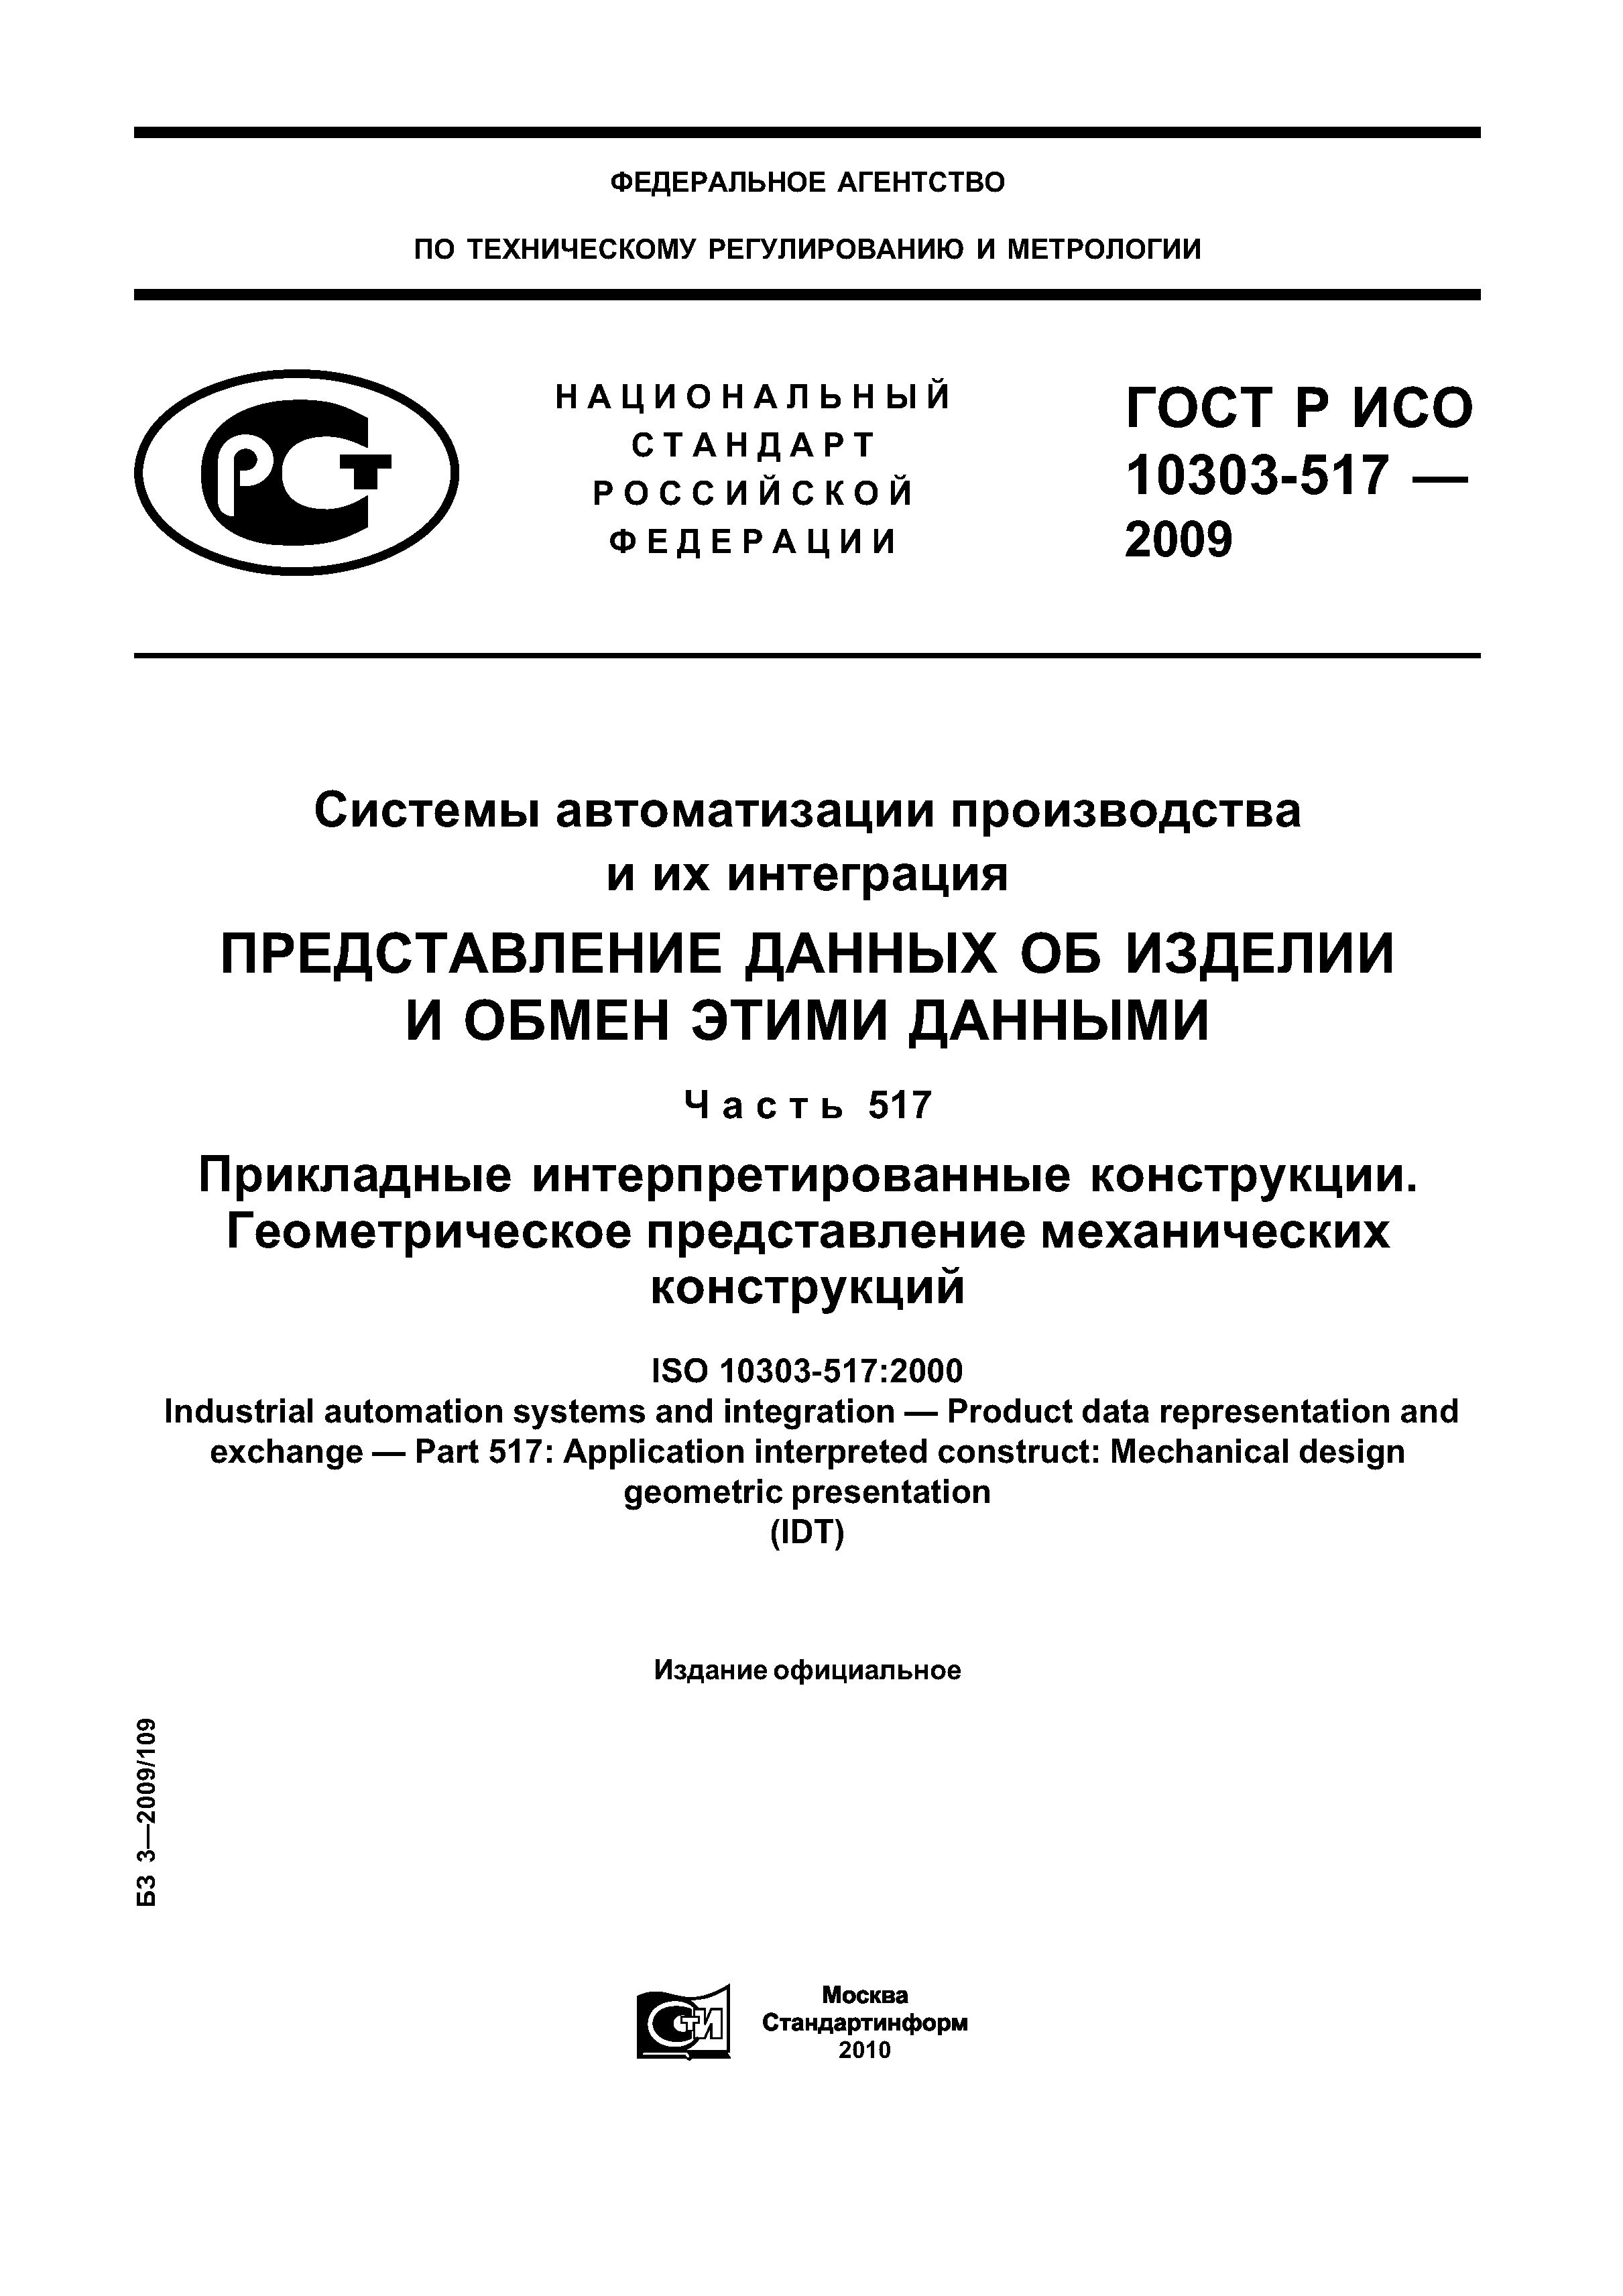 ГОСТ Р ИСО 10303-517-2009